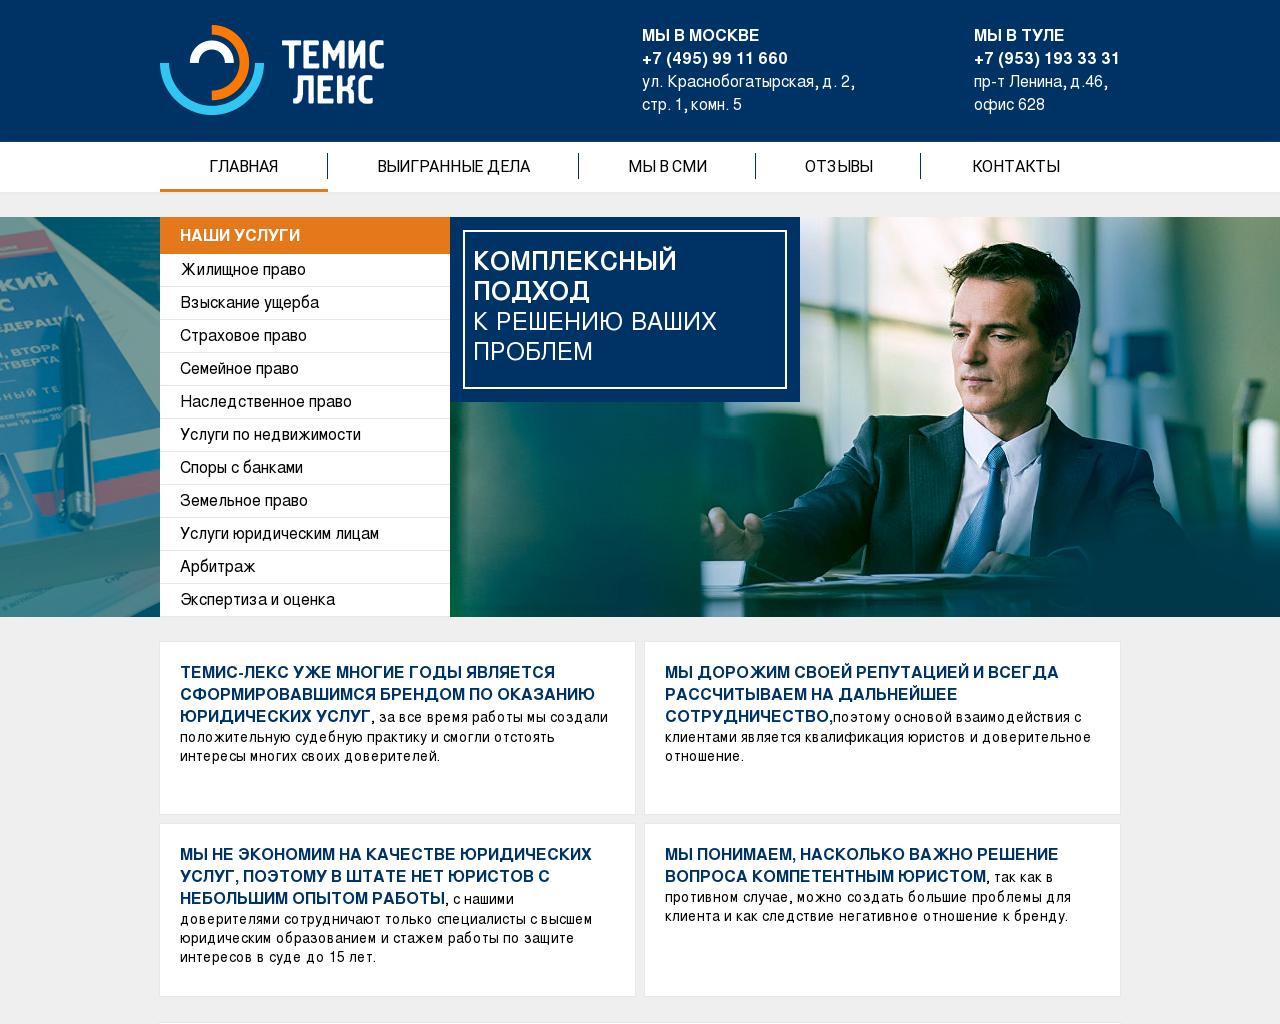 Изображение сайта temis-lex.ru в разрешении 1280x1024